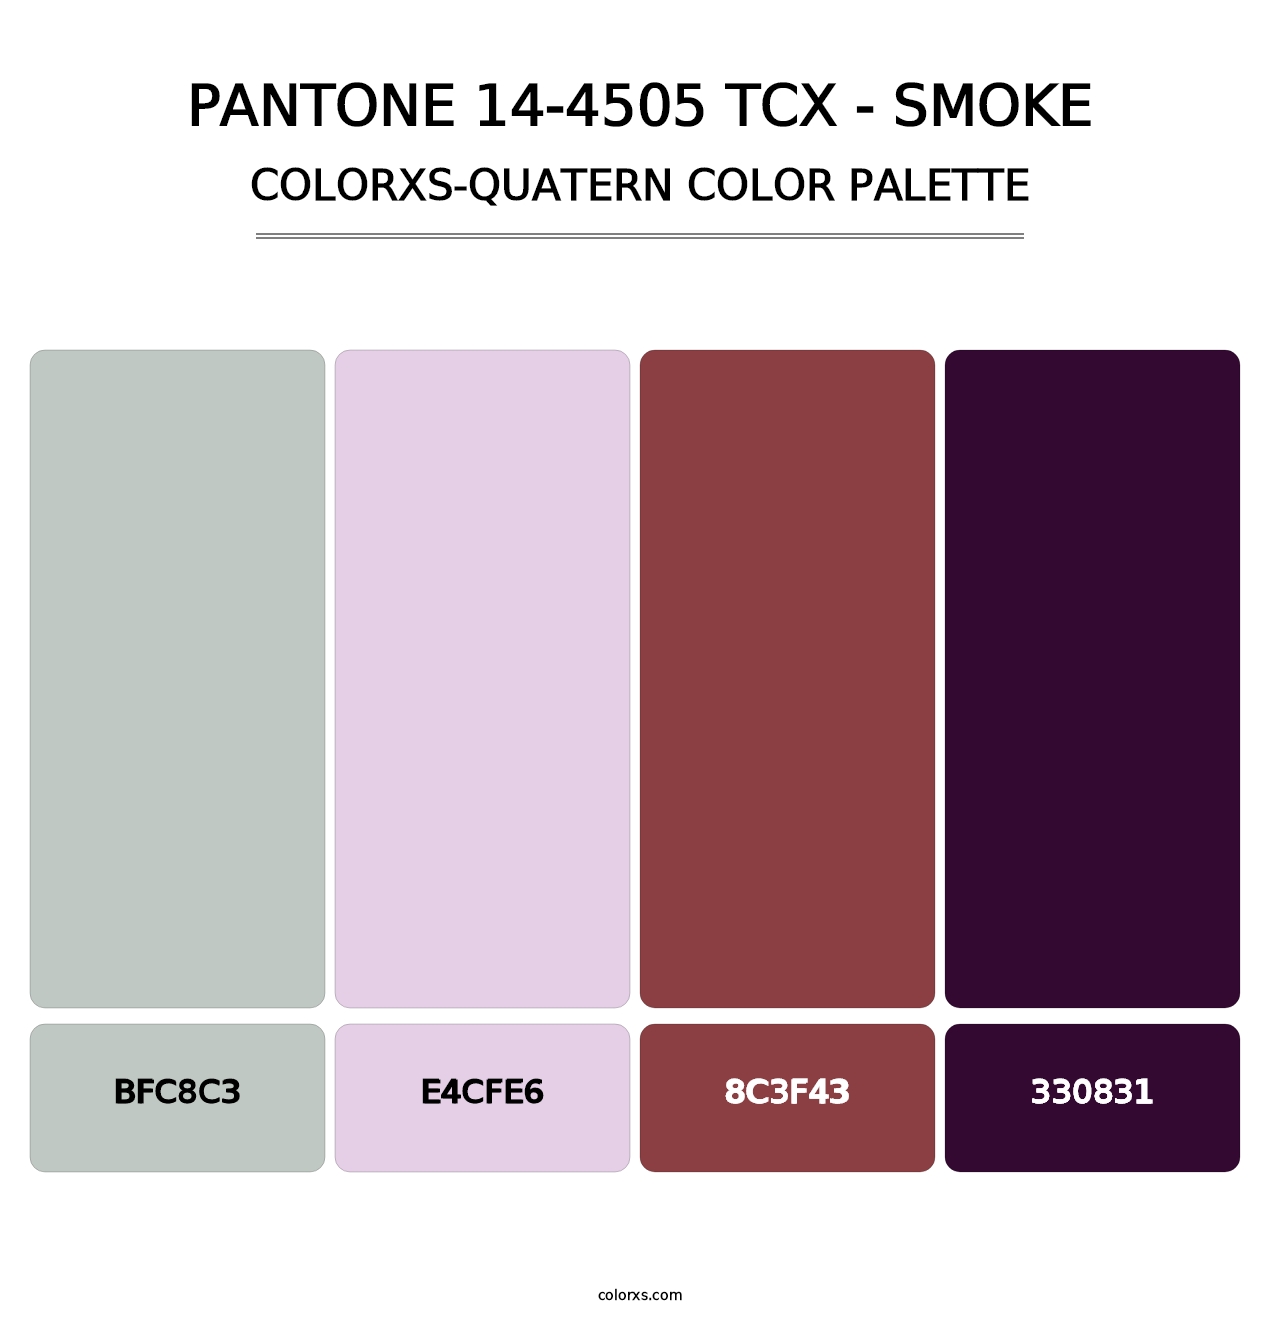 PANTONE 14-4505 TCX - Smoke - Colorxs Quatern Palette